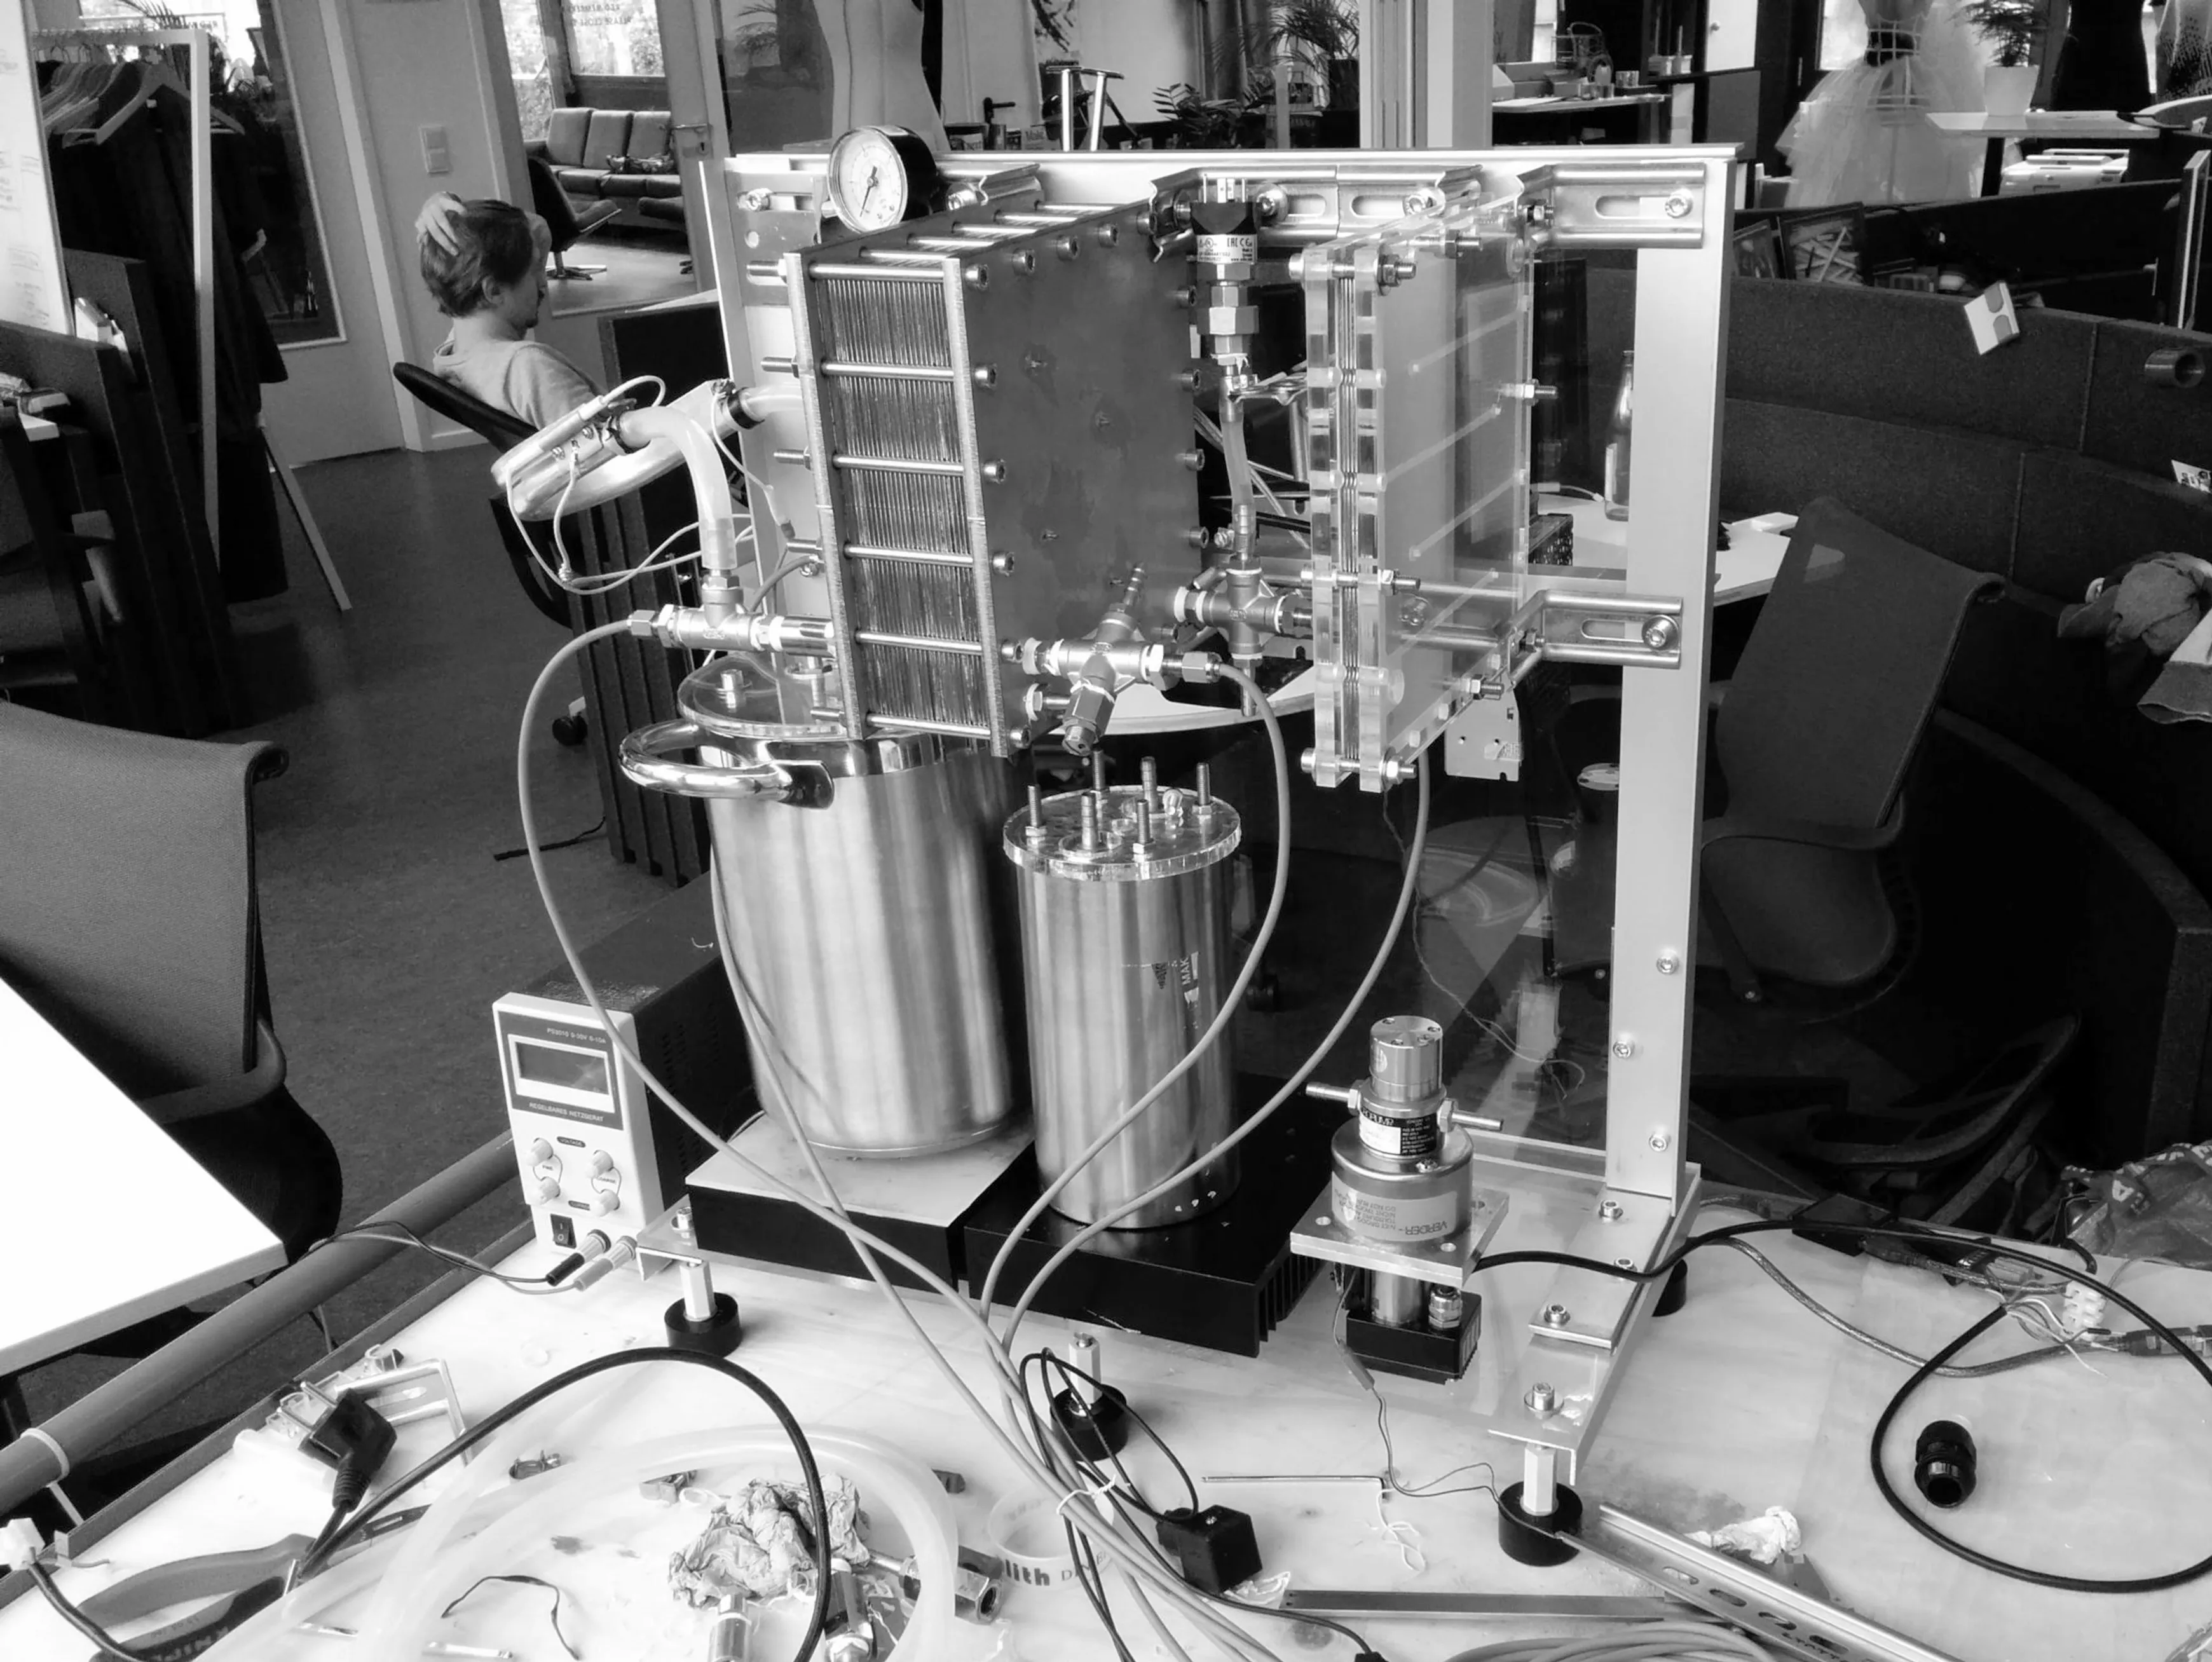 The internal destilling mechanism of the Mitte water purifier